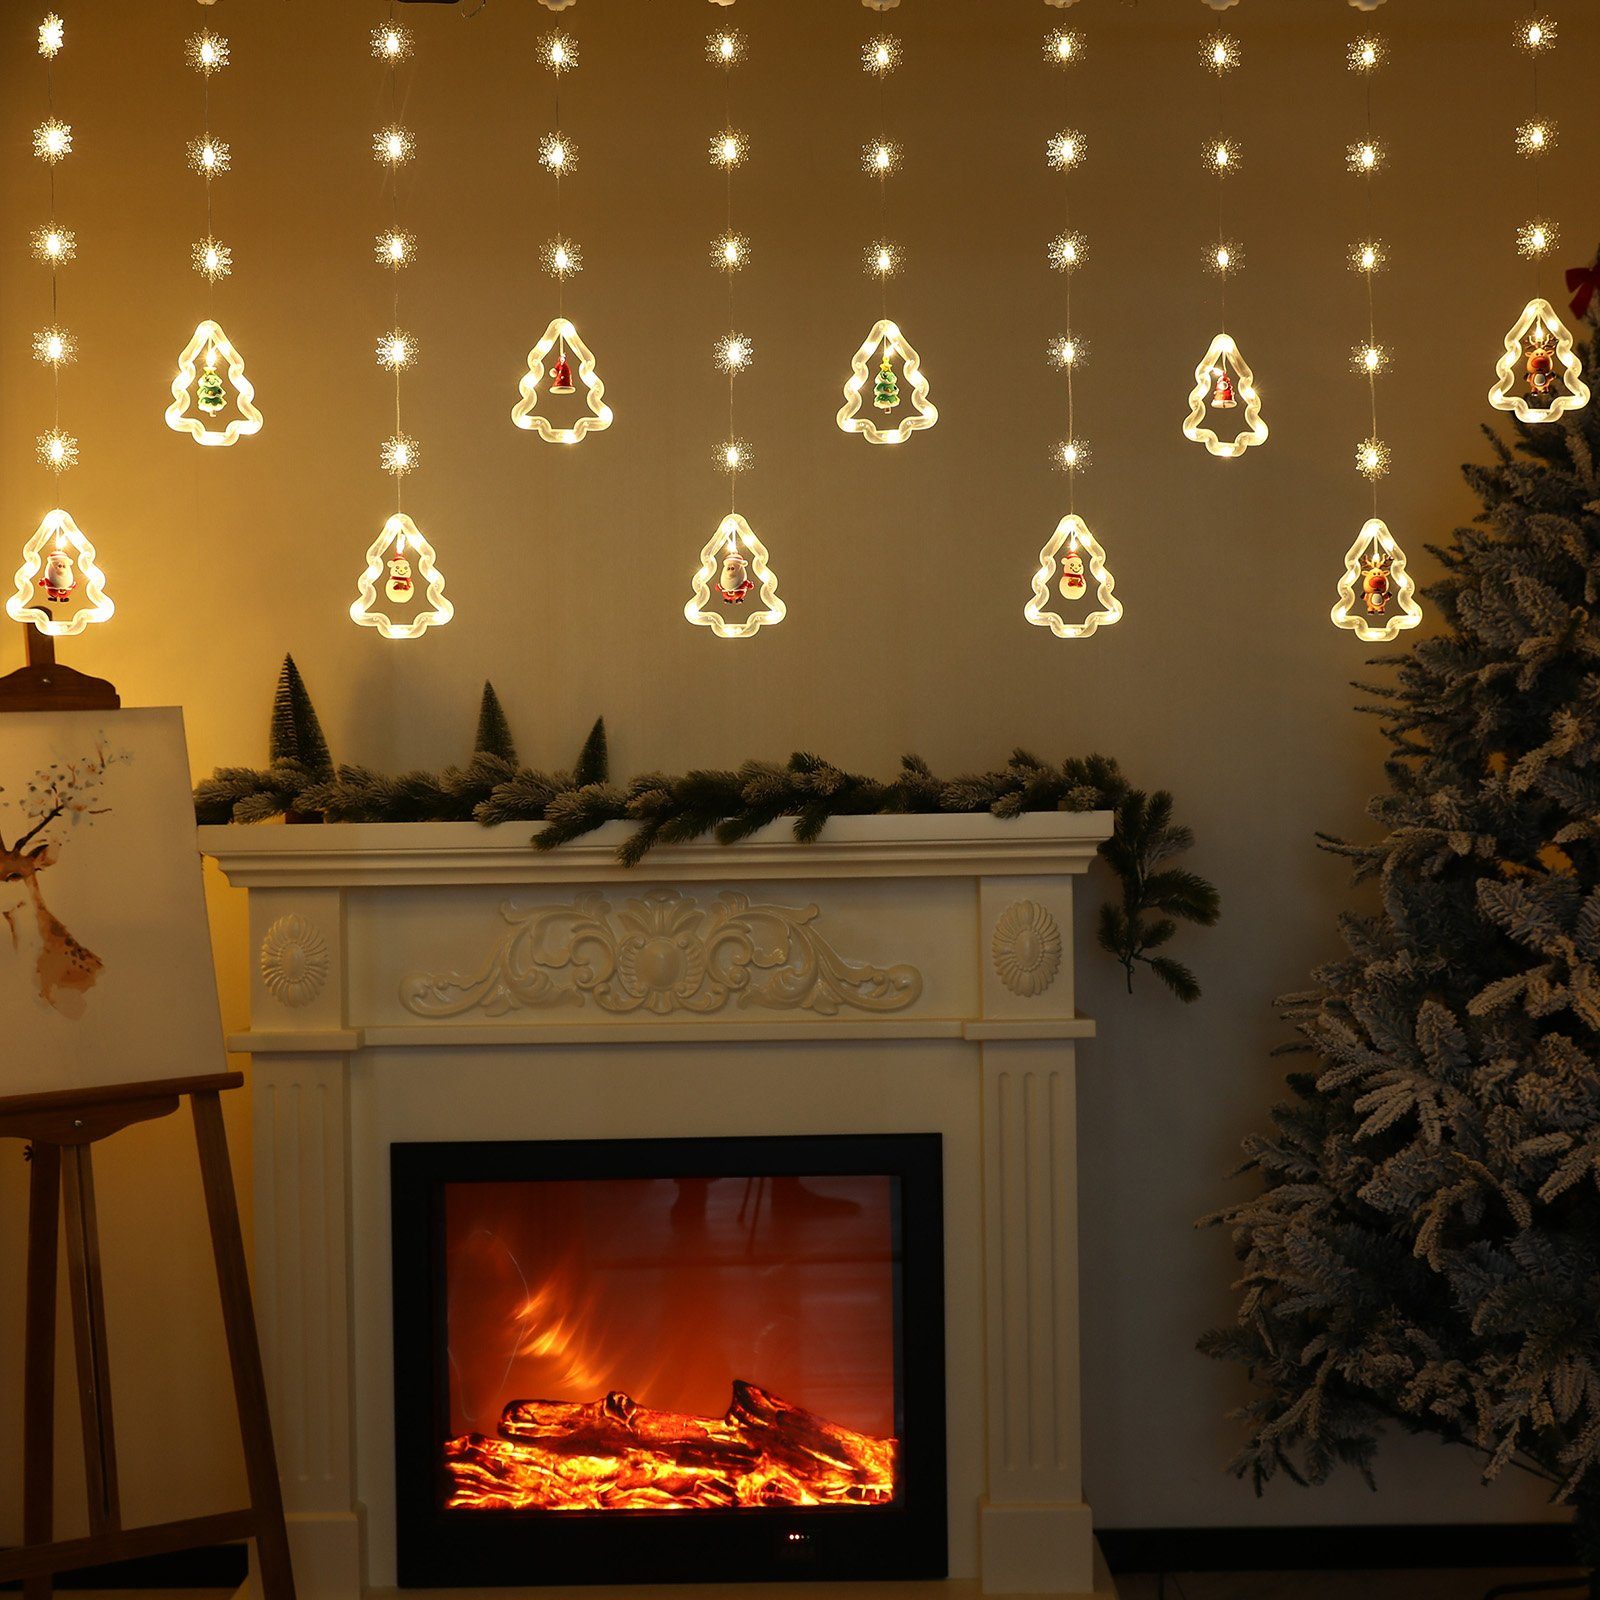 Rosnek LED-Lichtervorhang 3M, für Glitzermodi, Weihnachtsschmuck Weihnachtsparty-Dekoration, Silikon 8 Schneeflocke, 10